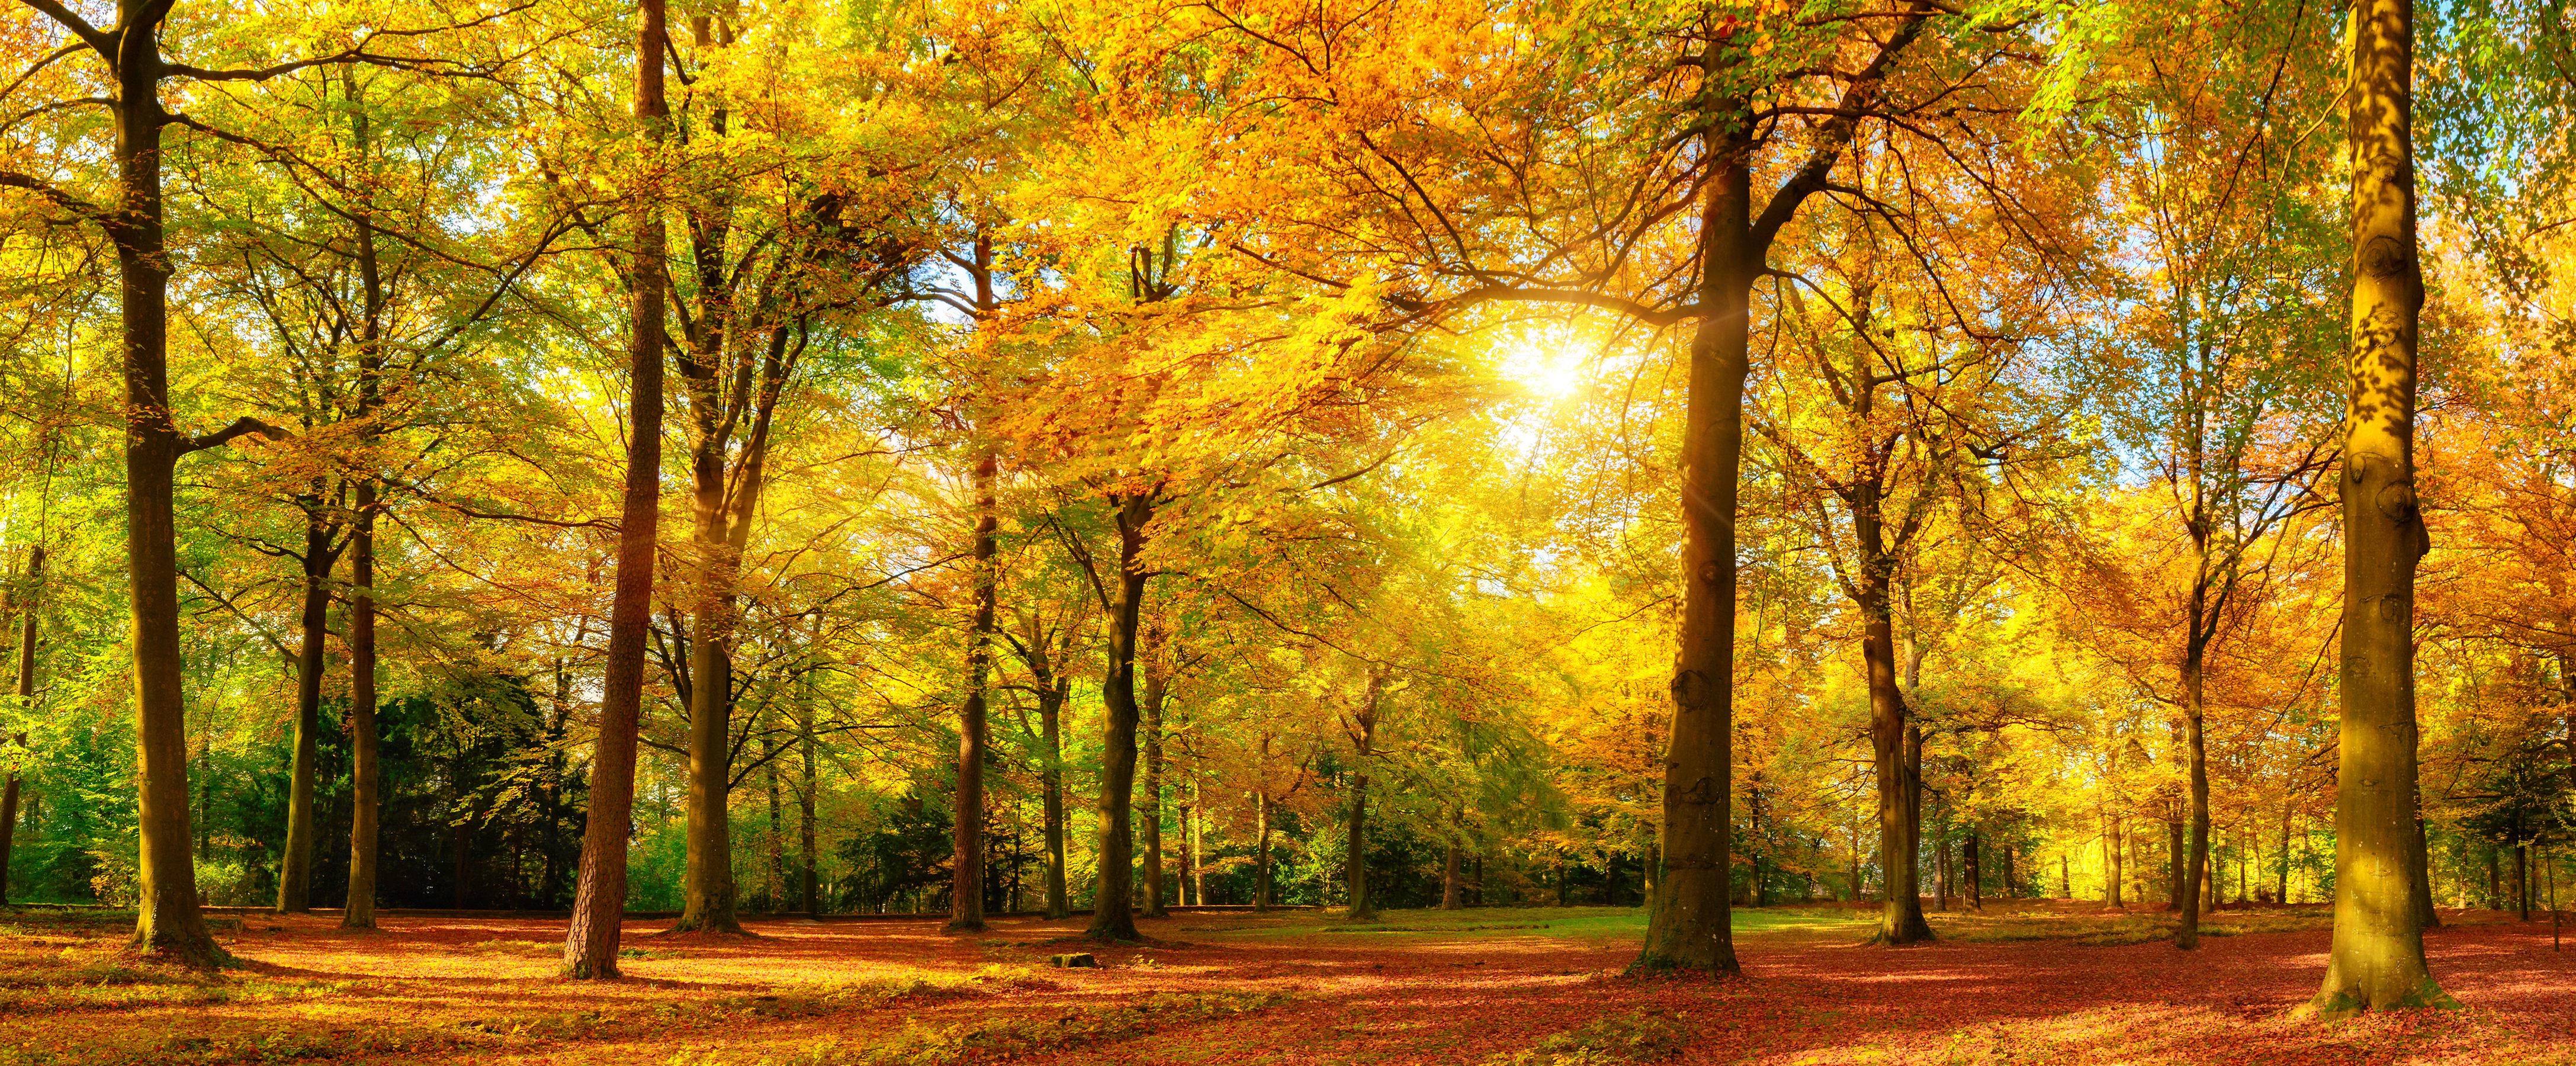 Скачать обои бесплатно Осень, Парк, Дерево, Золотой, Фотографии, Жёлтый, Солнечный Луч картинка на рабочий стол ПК